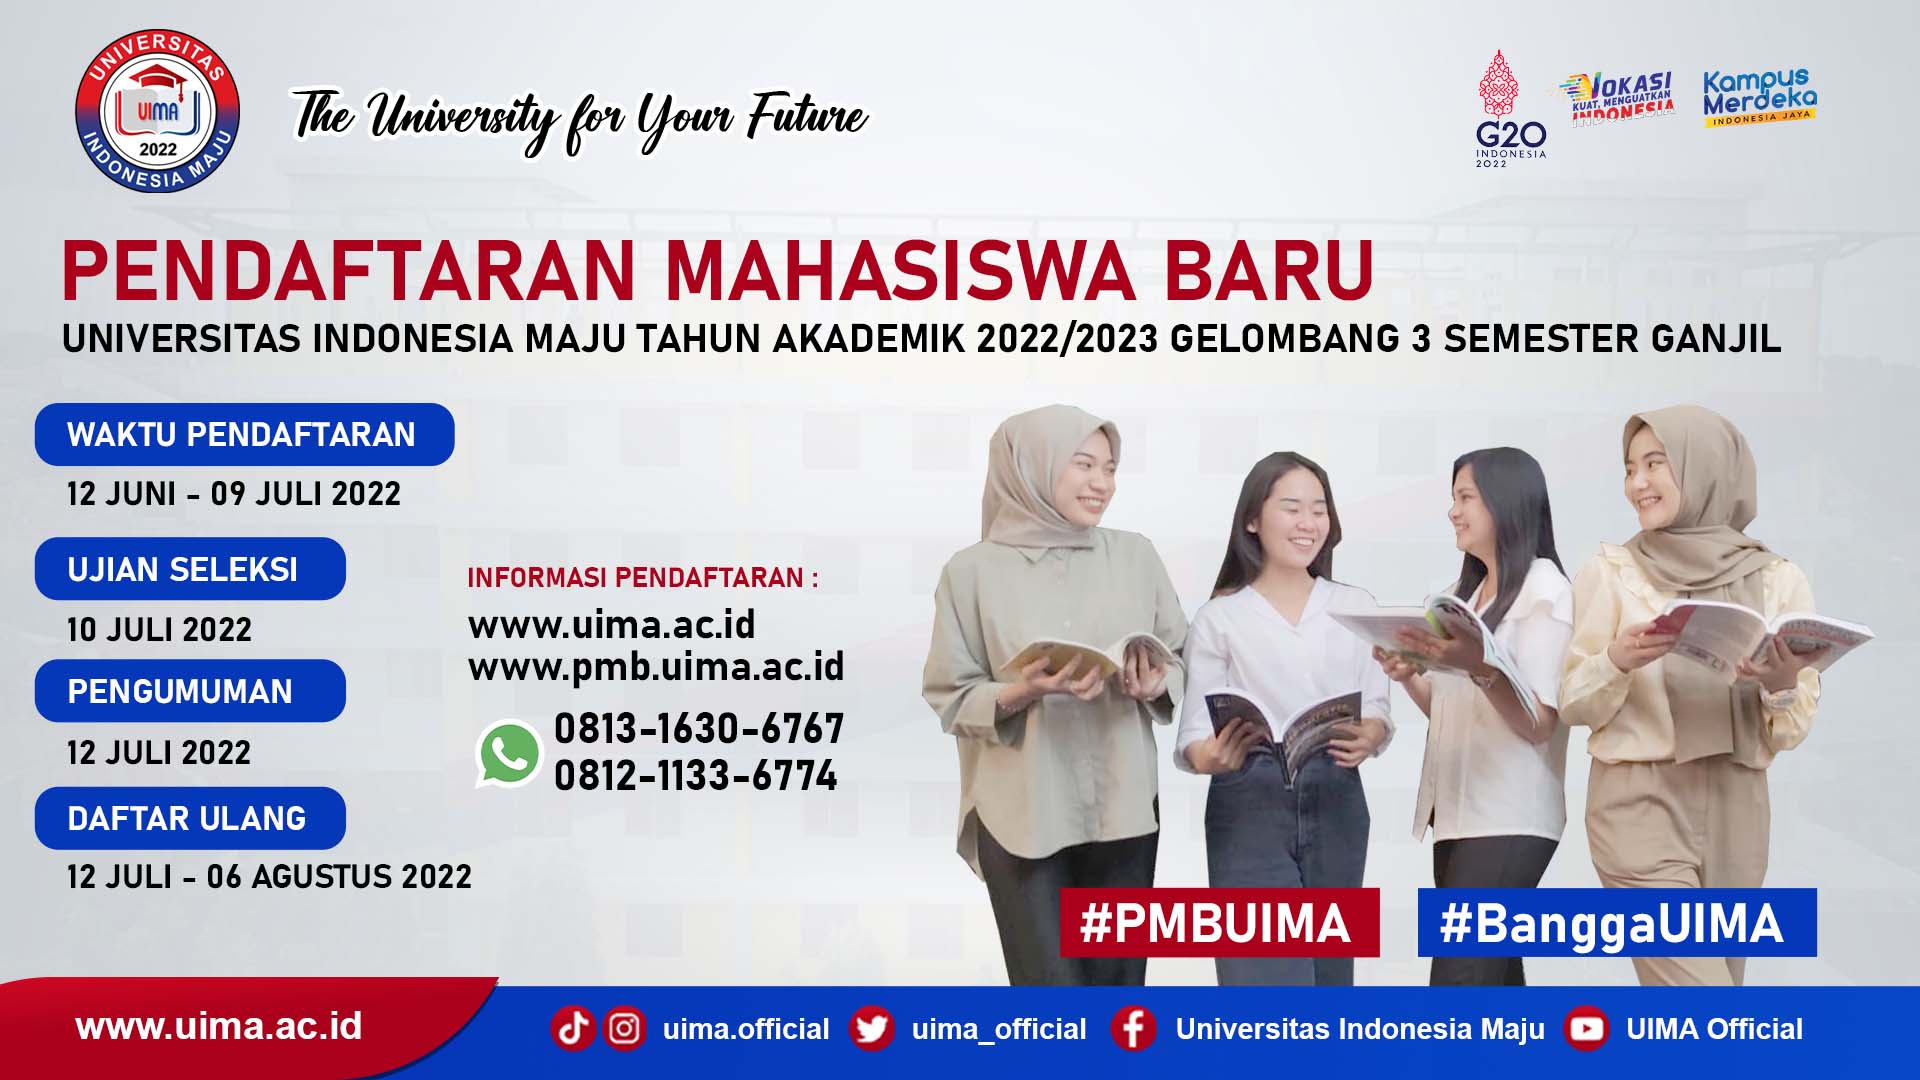 Pendaftaran Mahasiswa Baru Universitas Indonesia Maju